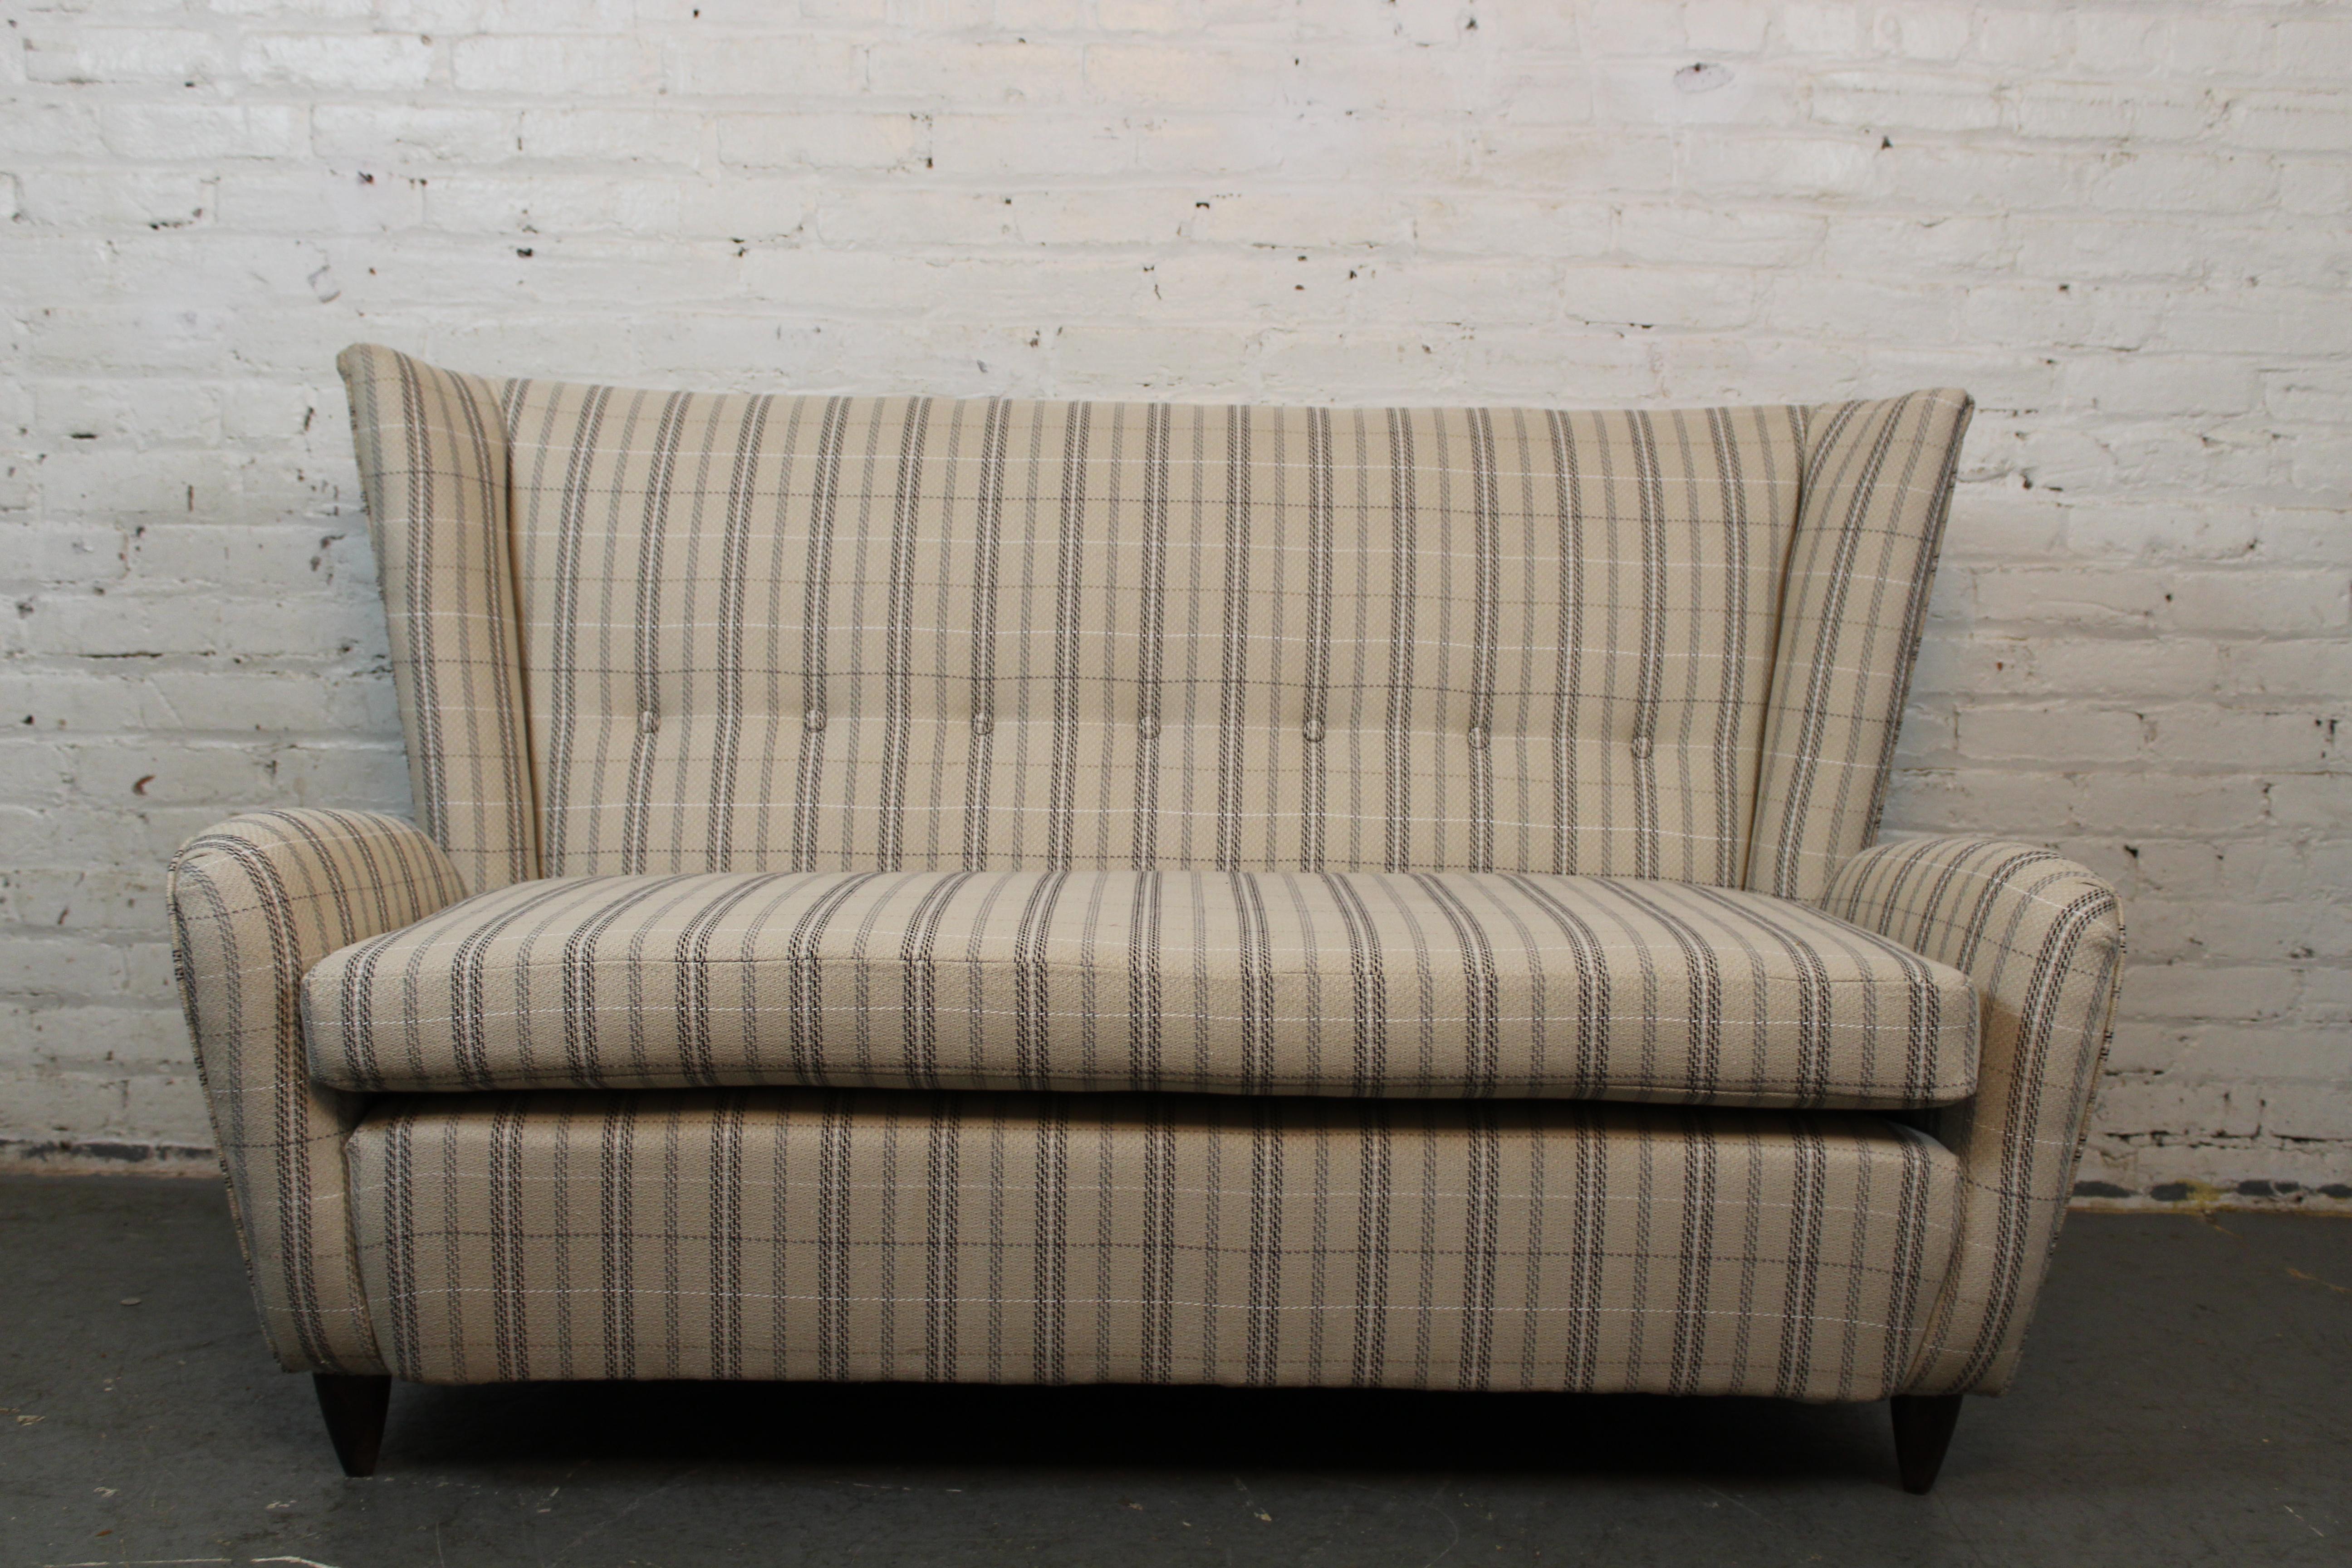 Lassen Sie sich von der wunderschönen Einzigartigkeit der legendären italienischen Designerin Paola Buffa mit diesem fantastischen, zierlichen Wingback-Sofa begeistern. Dieser charmante Sitz aus den 1950er Jahren schlägt mit seinen übertrieben